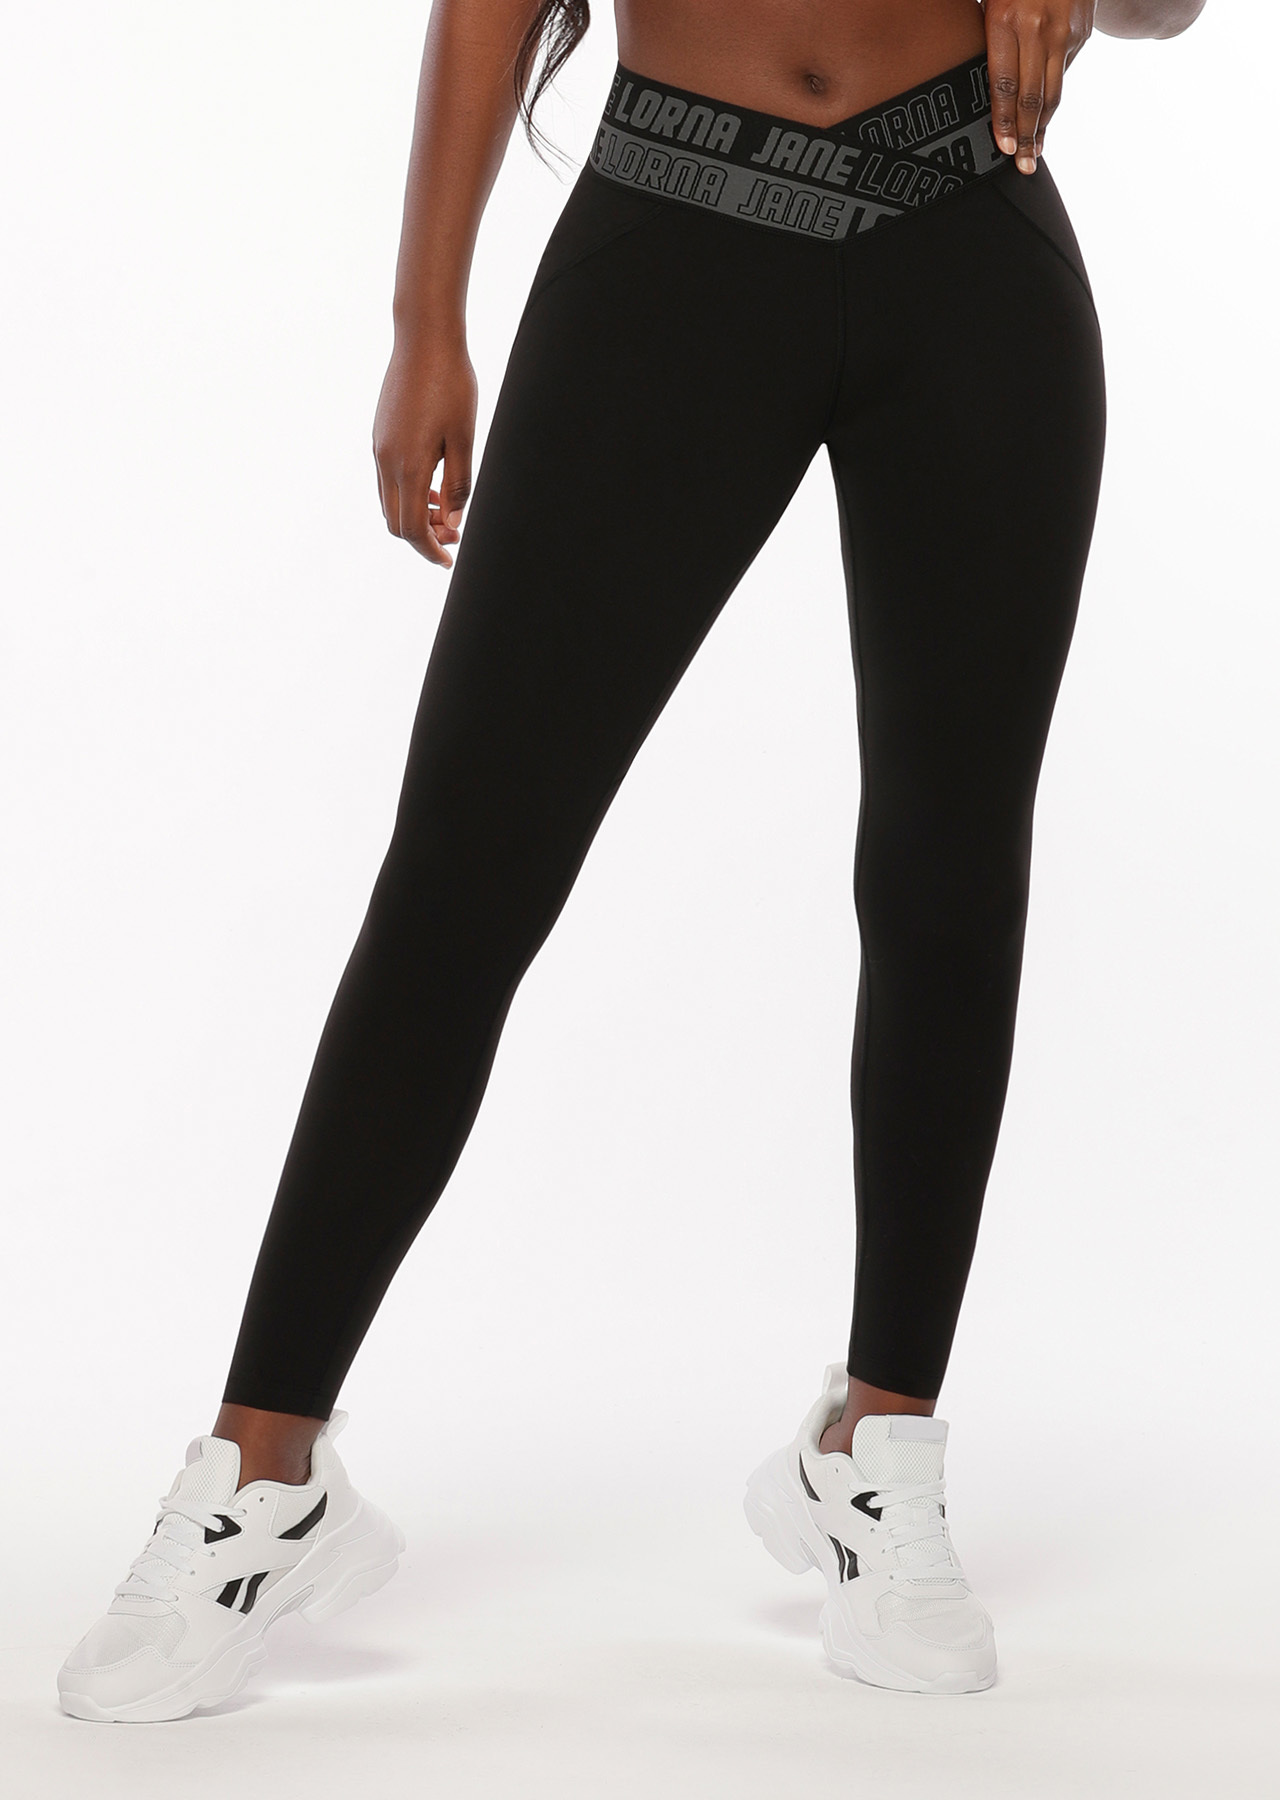 Finesse Full Length Leggings | Tights | Black | Full Length | Lorna Jane USA